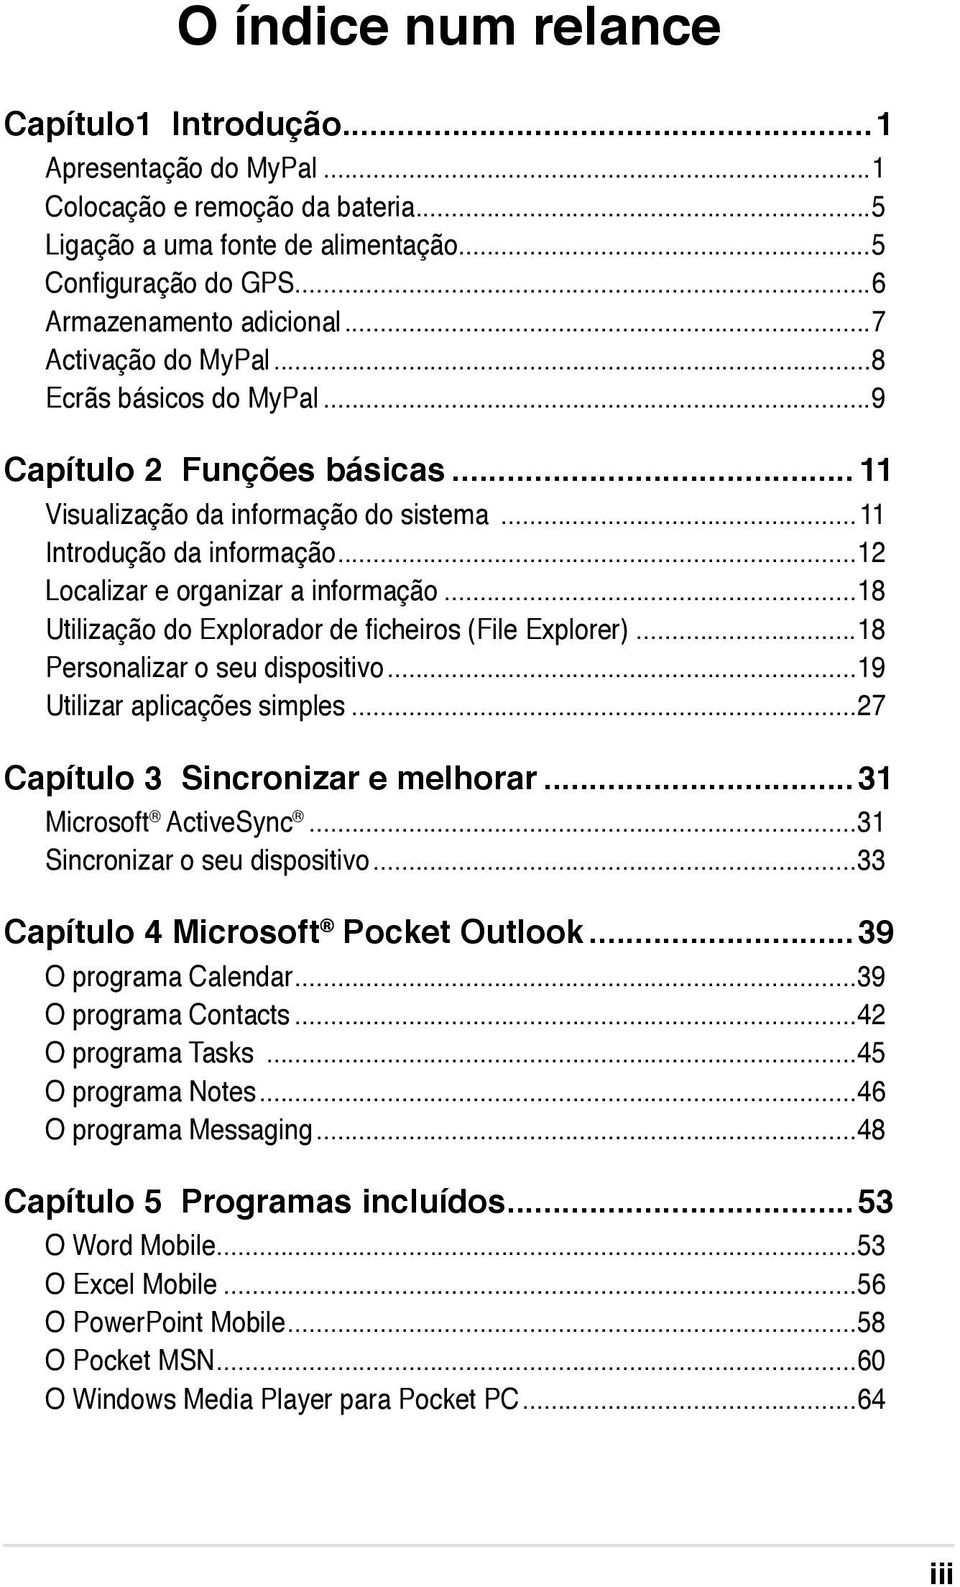 ..18 Utilização do Explorador de ficheiros (File Explorer)...18 Personalizar o seu dispositivo...19 Utilizar aplicações simples...27 Capítulo 3 Sincronizar e melhorar...31 Microsoft ActiveSync.